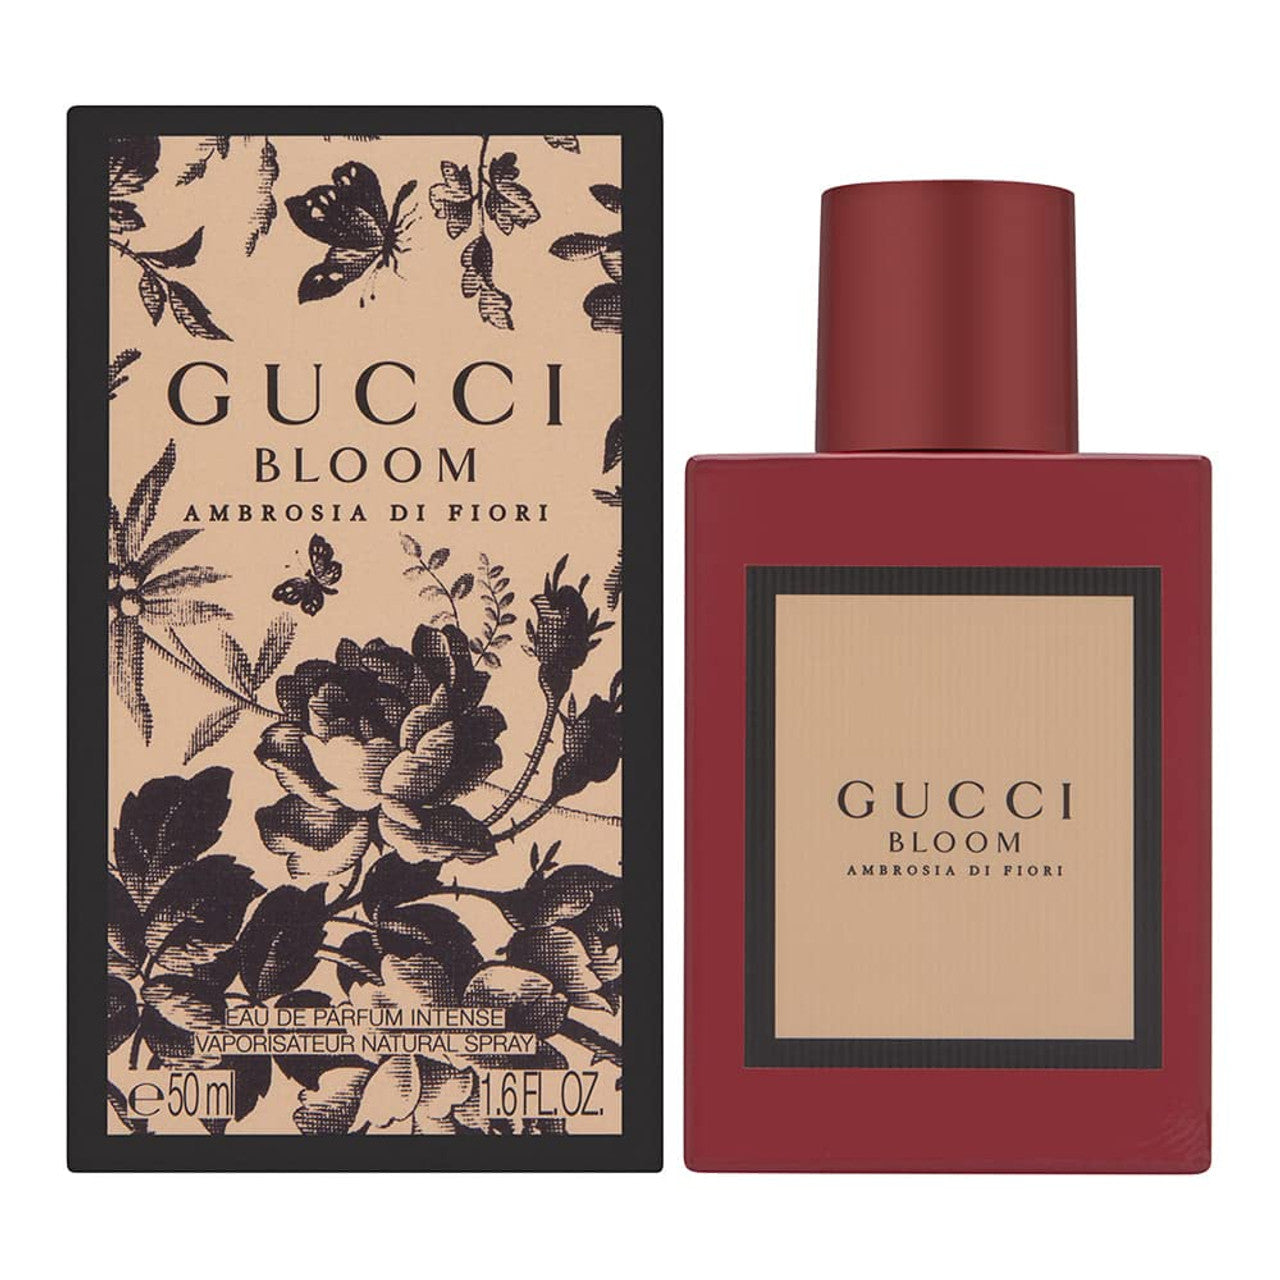 Gucci Bloom Ambrosia Fiori Intense By Gucci100MLEau De Parfum 